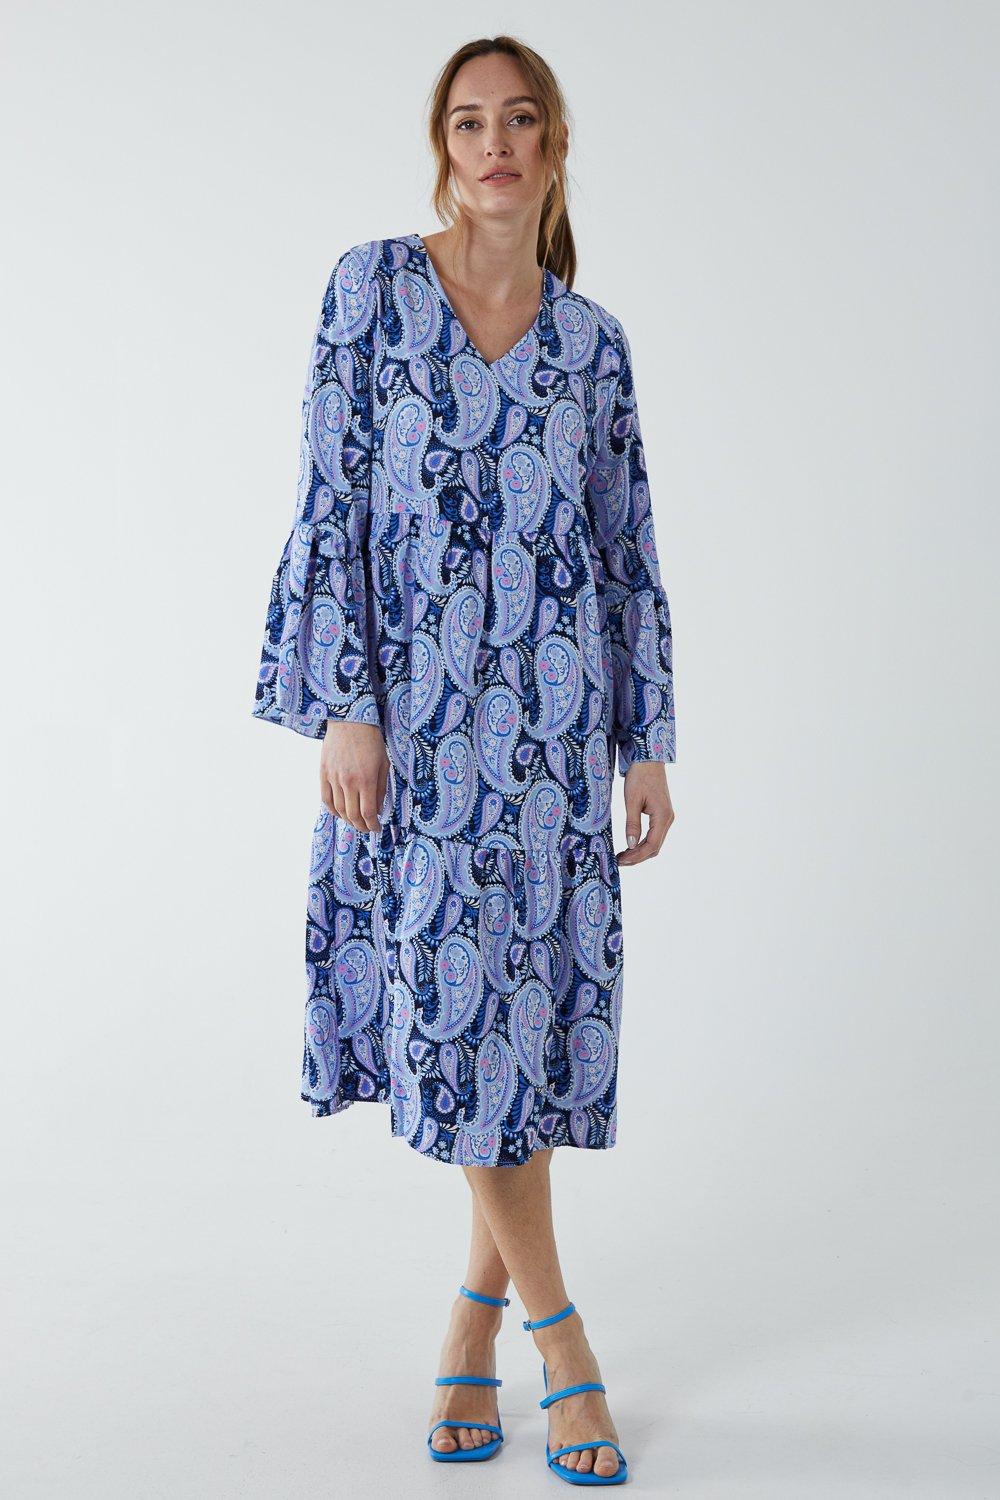 Платье с V-образным вырезом и узором пейсли Blue Vanilla, синий женское платье с принтом пейсли летнее свободное мини платье с длинным рукавом и v образным вырезом 2021